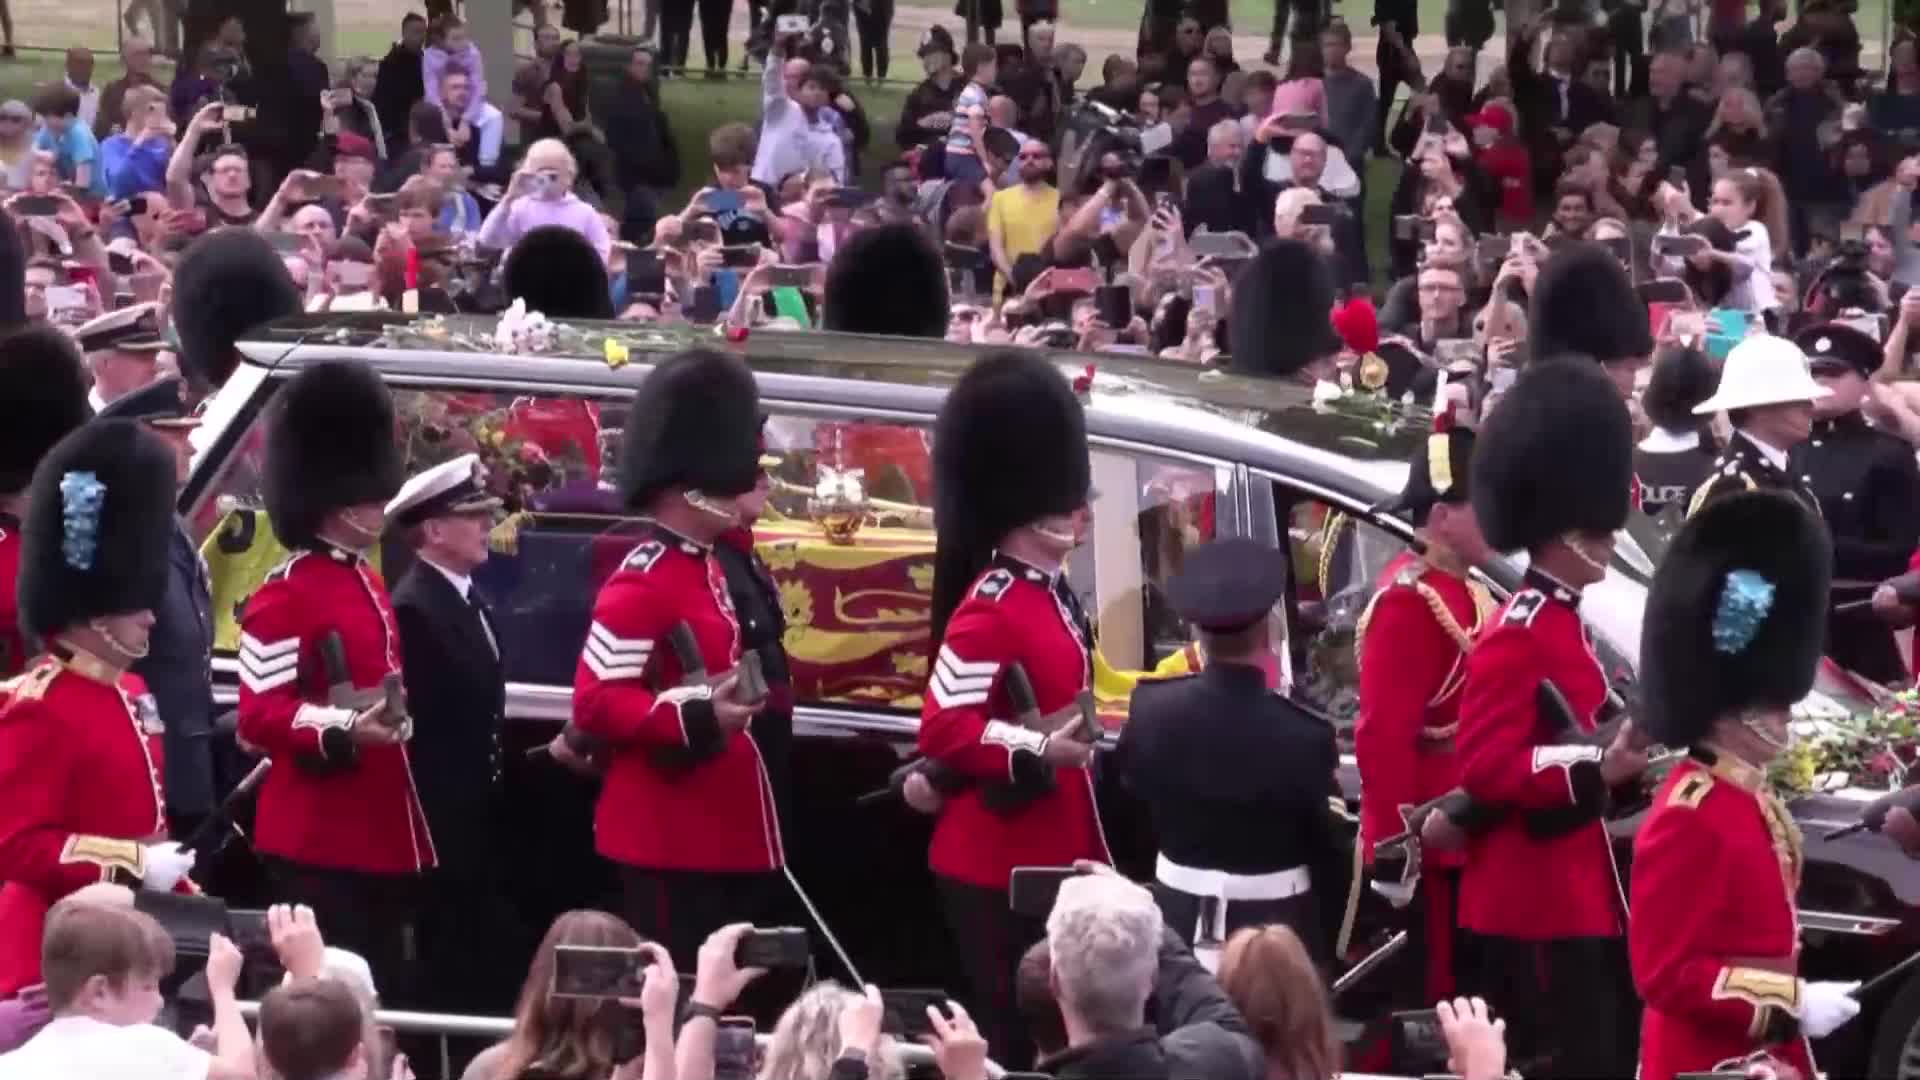 Почина гвардеец, носил ковчега с тленните останки на британската кралица